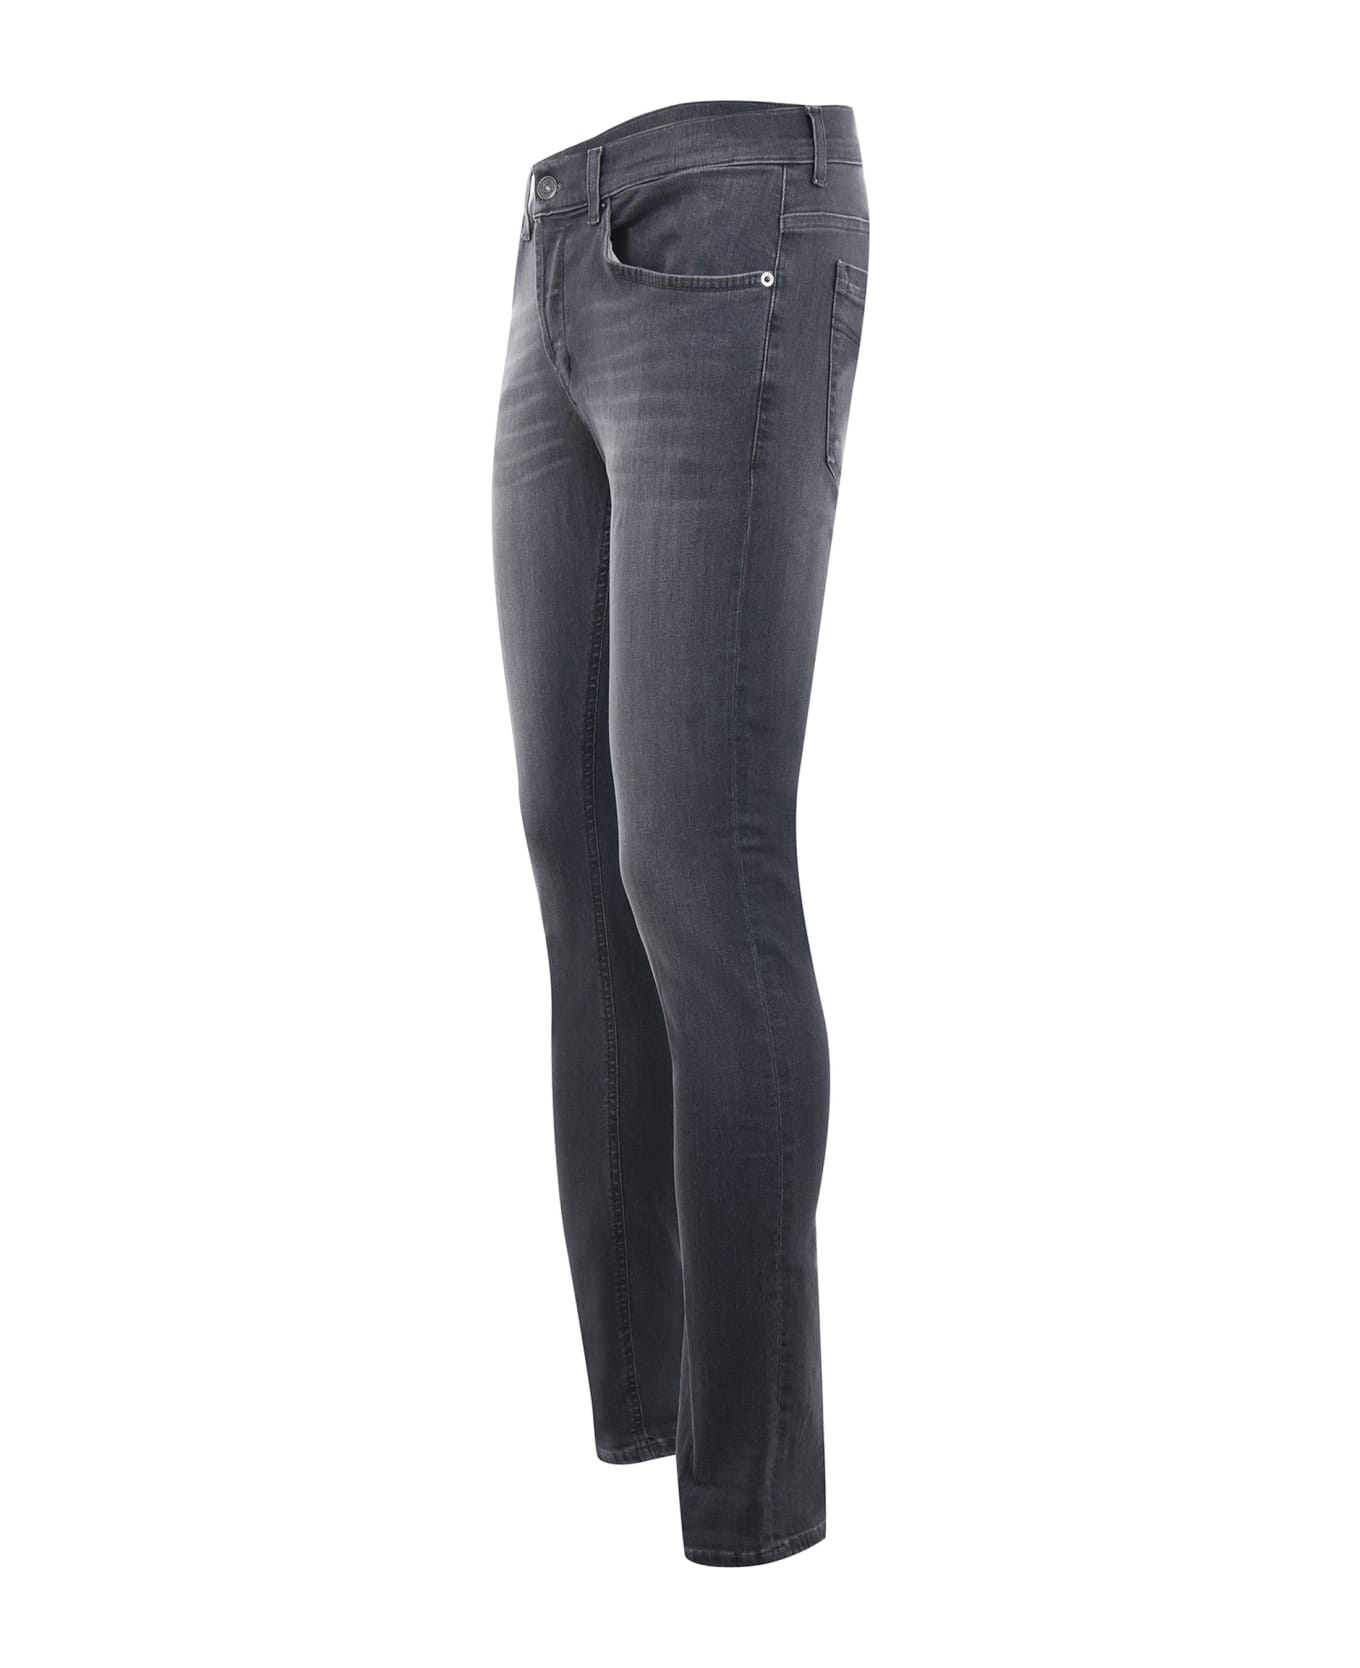 Dondup Pantalone George 5 Tasche Jeans - Denim grigio